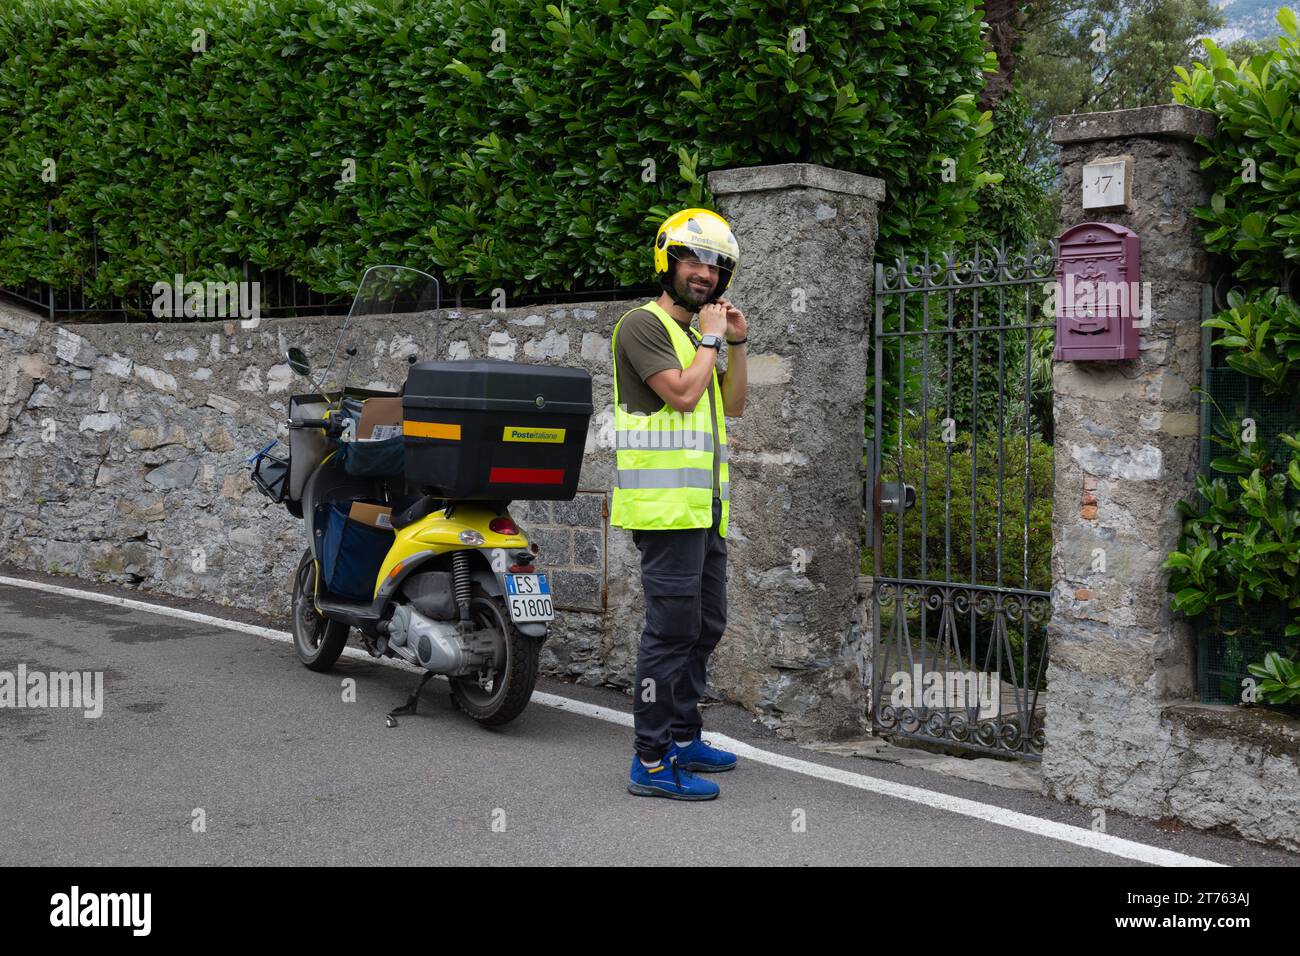 Un transporteur postal de poste Italiane attache son casque après avoir stationné sa moto le long d'un mur à Bellagio, Lombardie, Italie. Banque D'Images